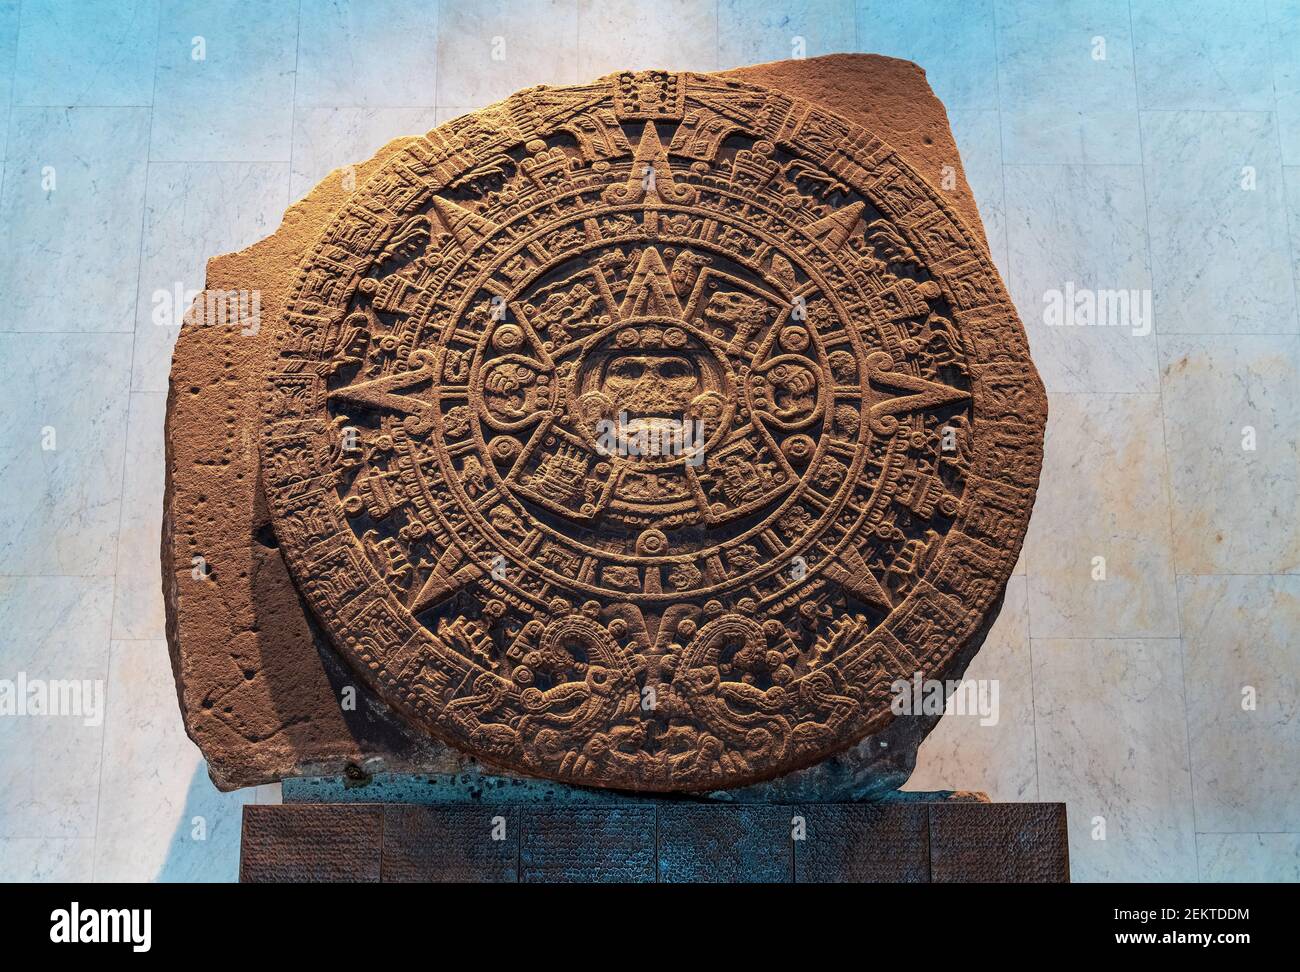 Monolito de calendario solar azteca excavado en la plaza principal de Zócalo de la ciudad de México, México. Foto de stock